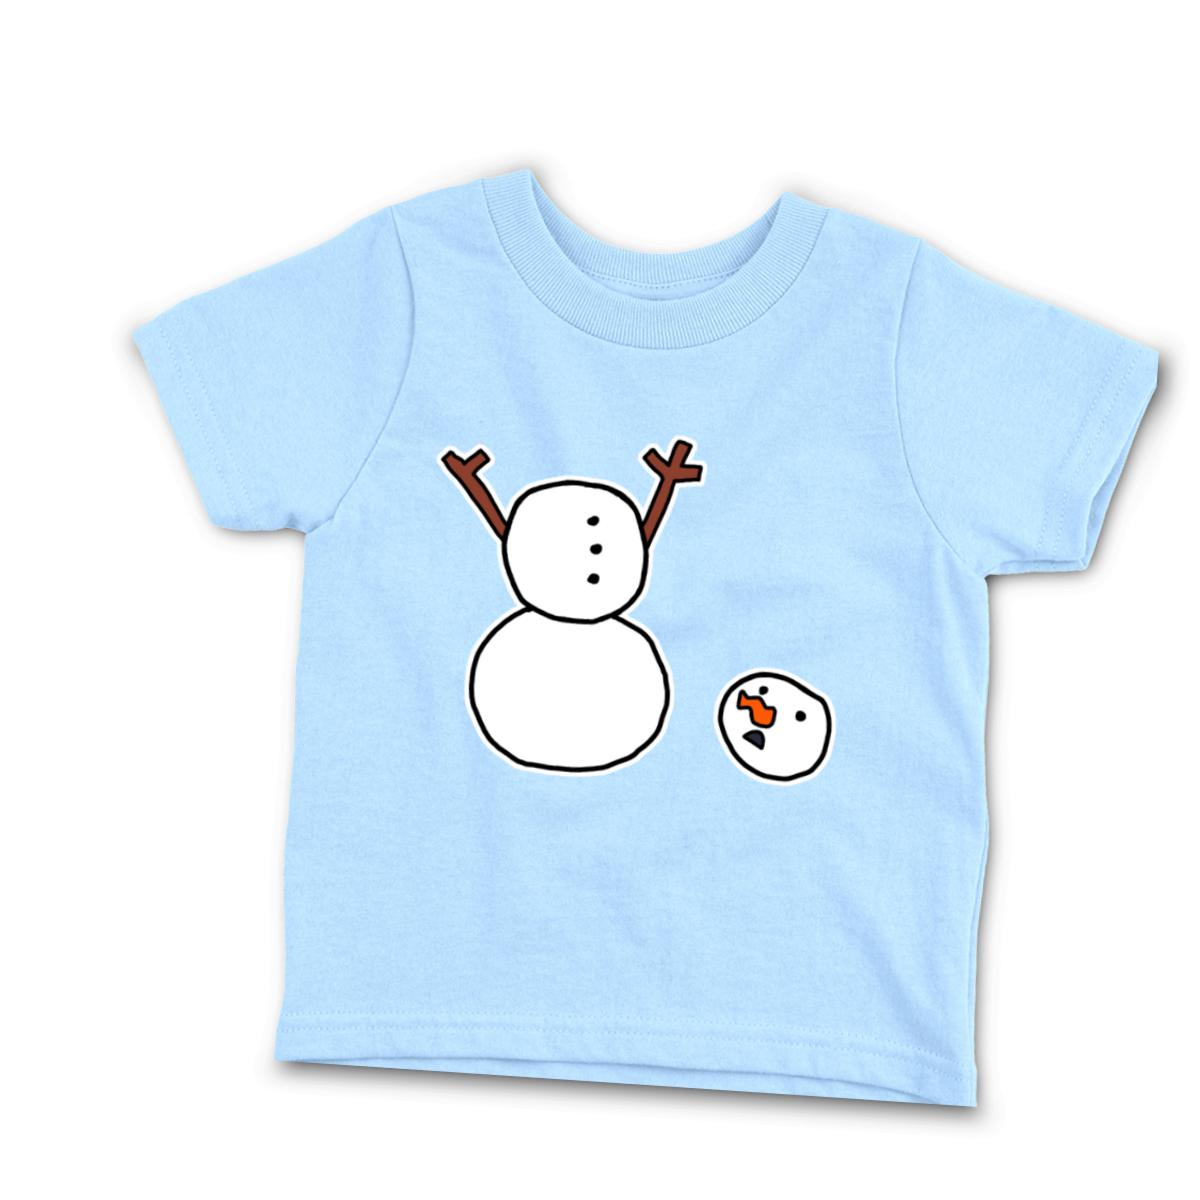 Headless Snowman Infant Tee 24M light-blue